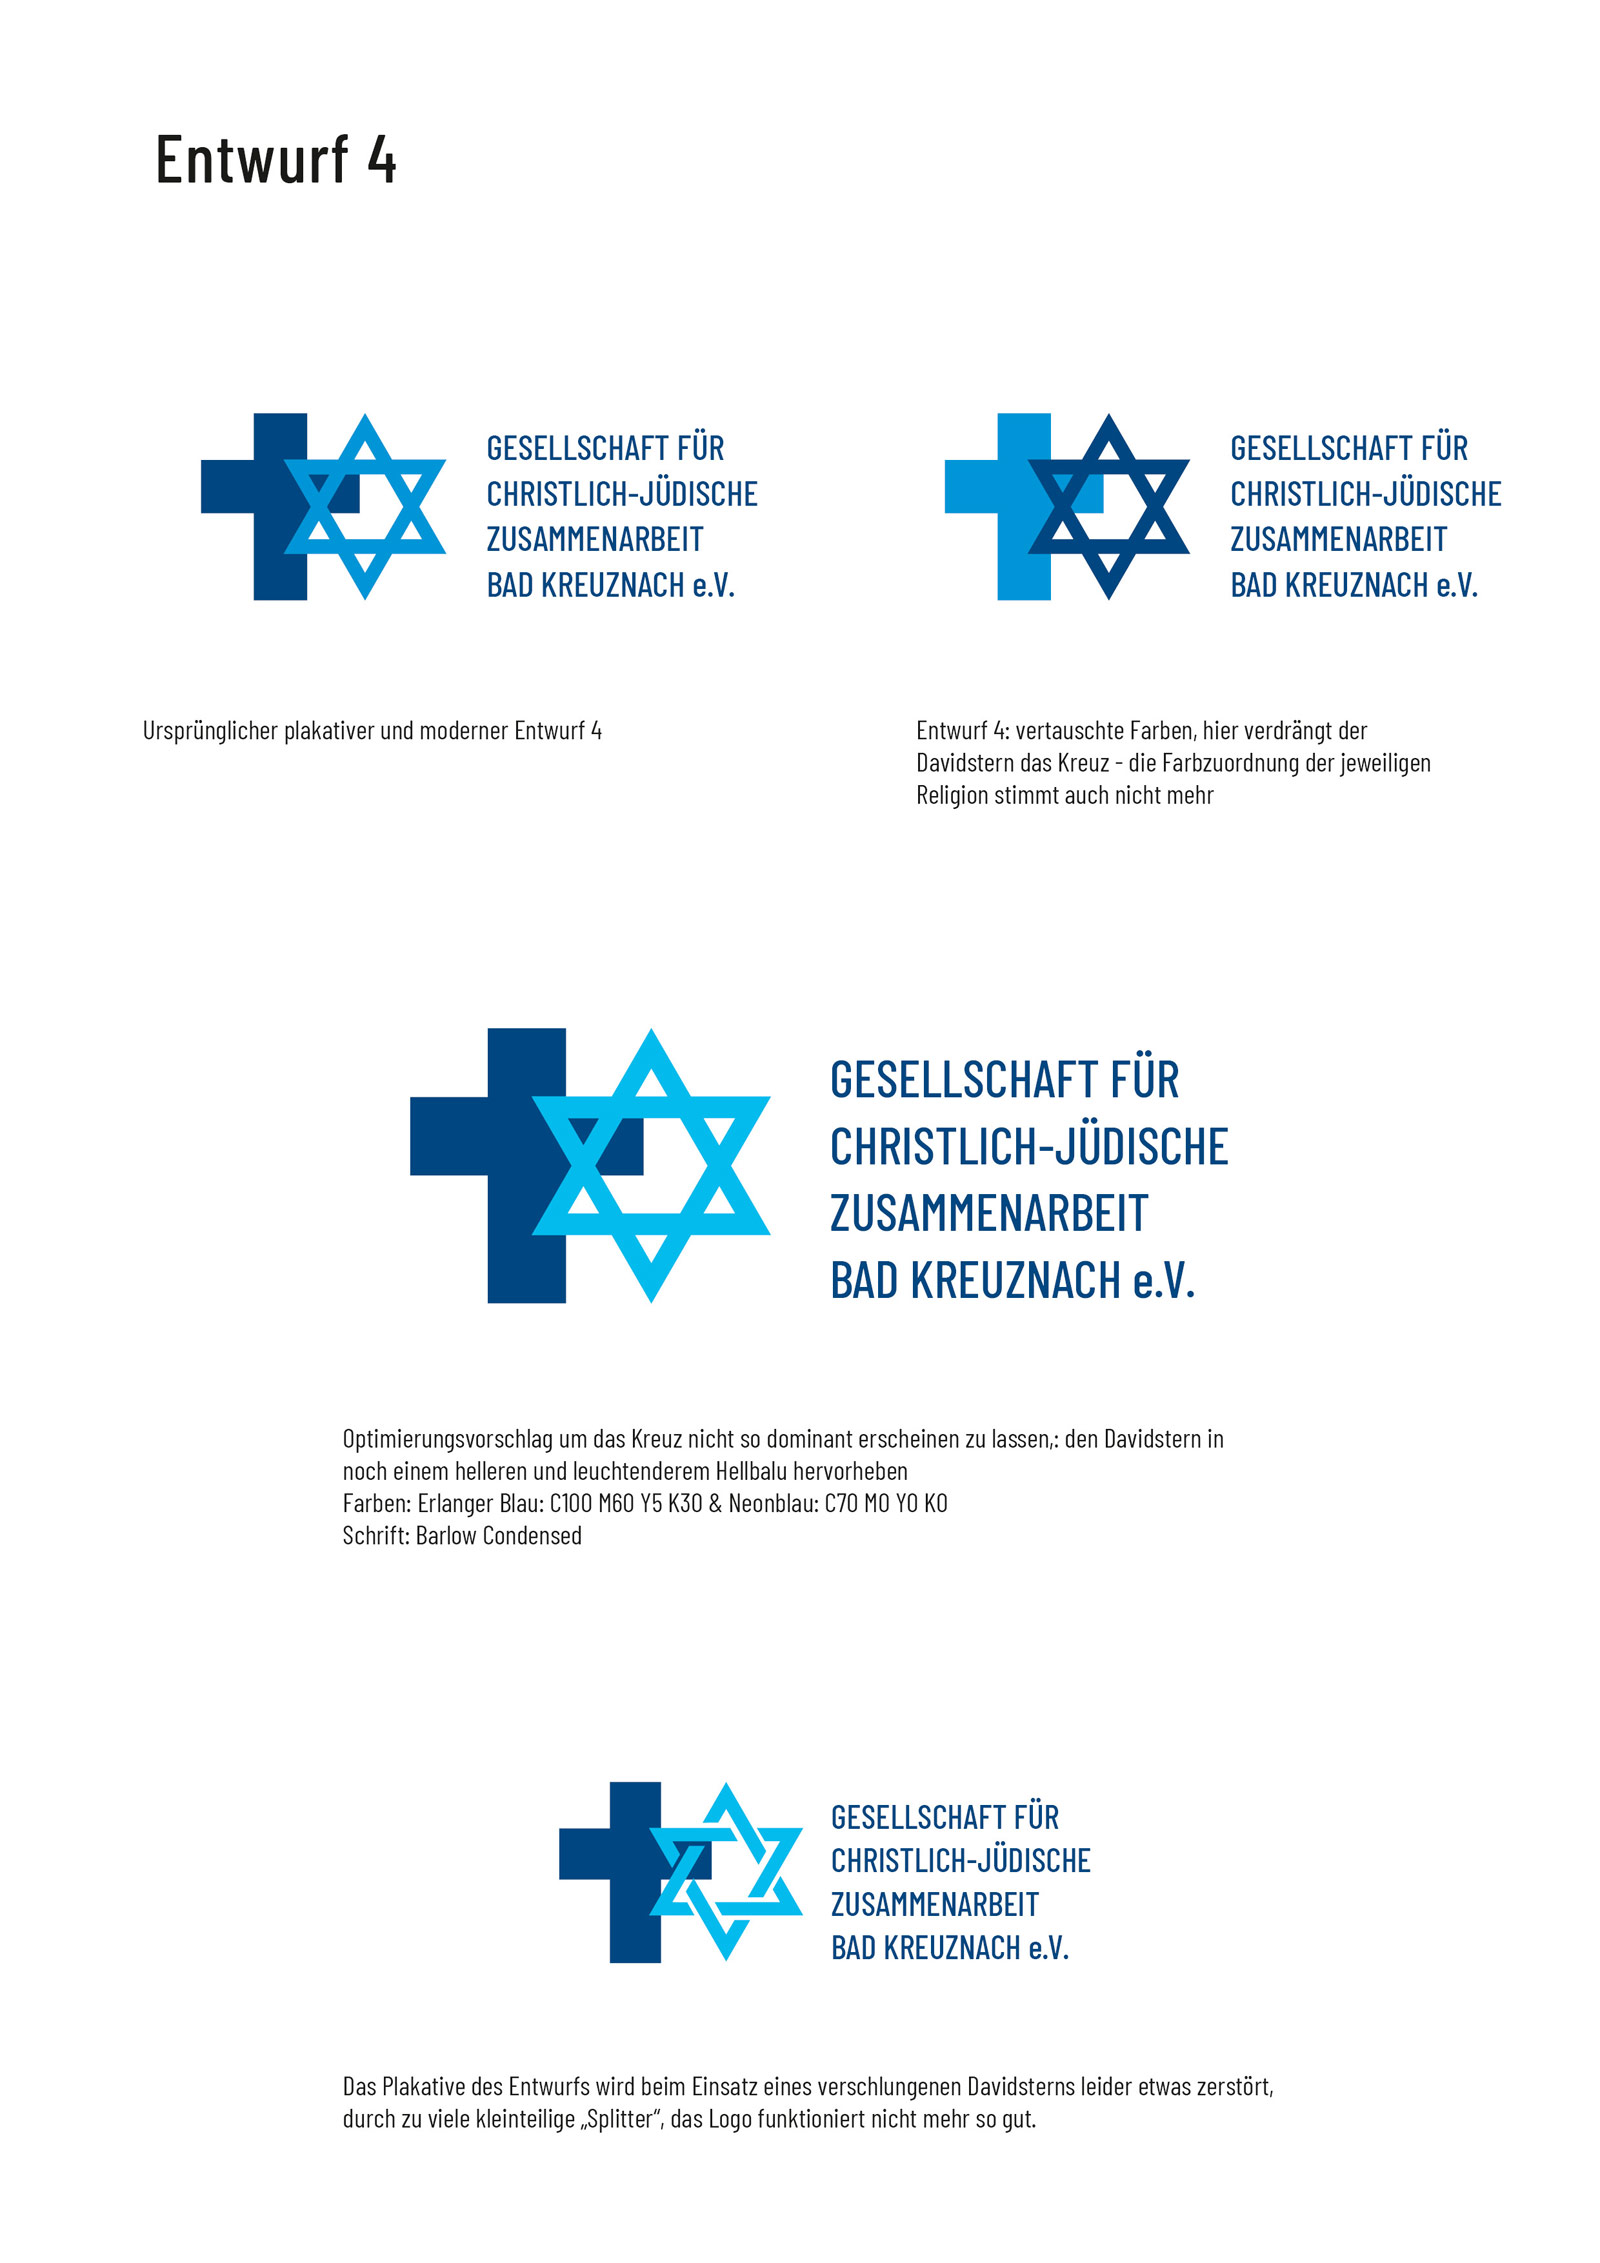 Corporate Design Entwicklung: Optimierung vierter Logoentwurf für die Gesellschaft Christlich-Jüdische Zusammenarbeit 